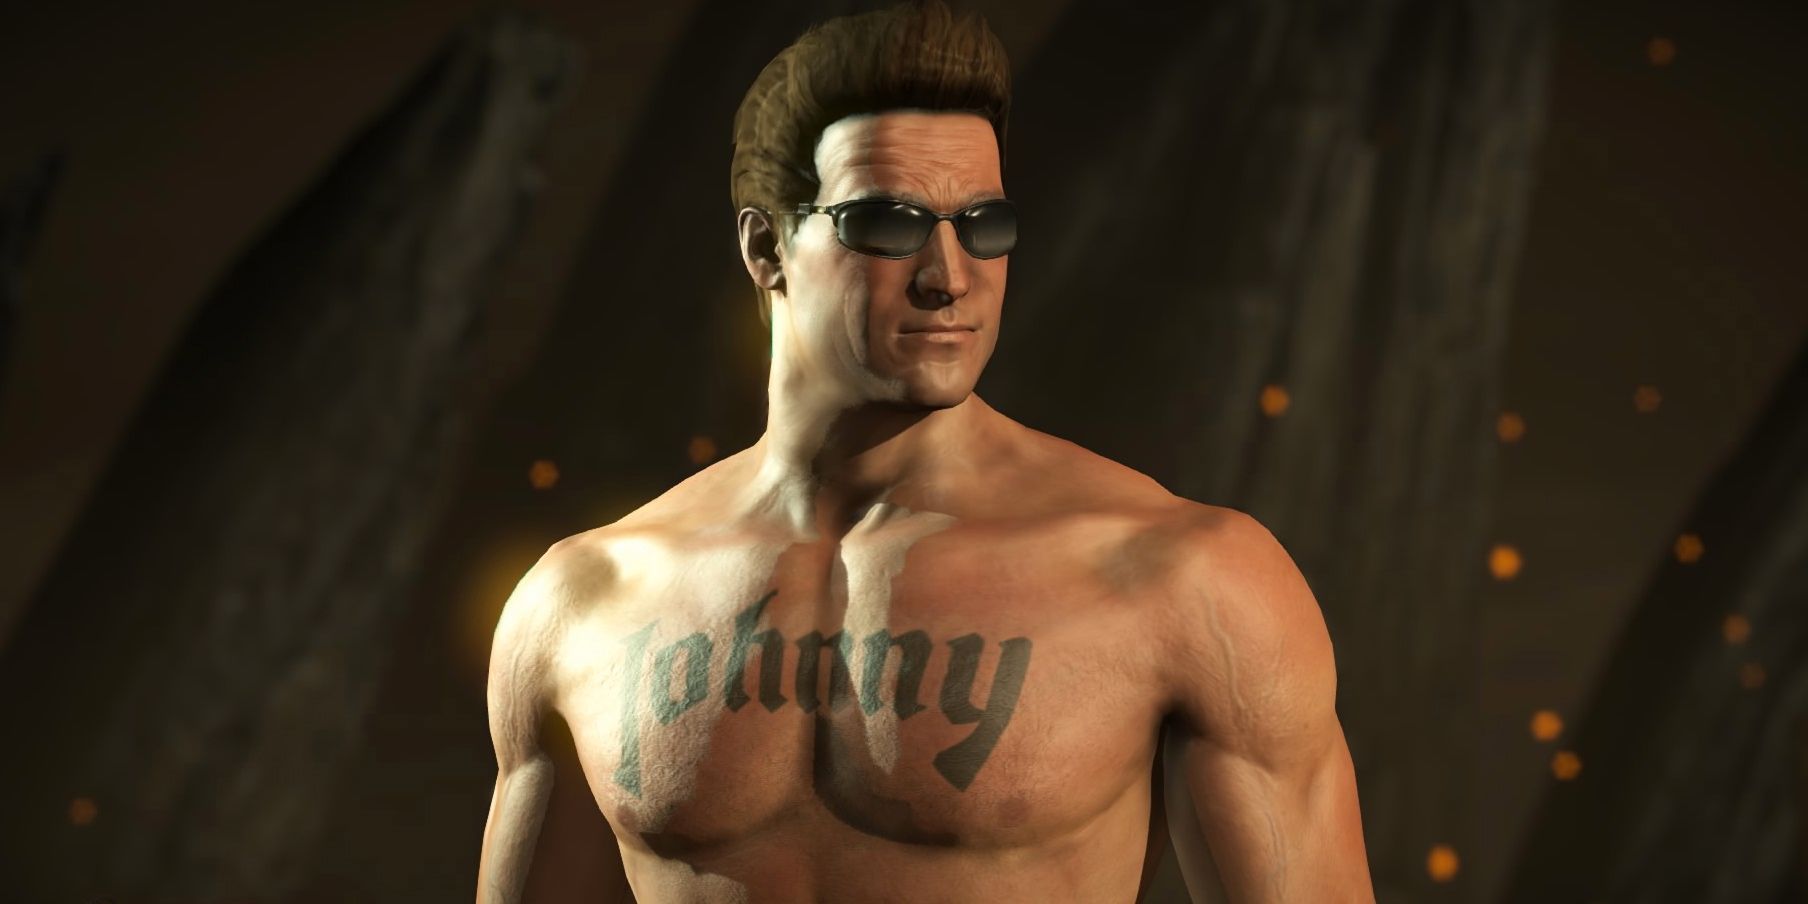 Johnny-Cage-Shirtless-in-Mortal-Kombat-X.jpg